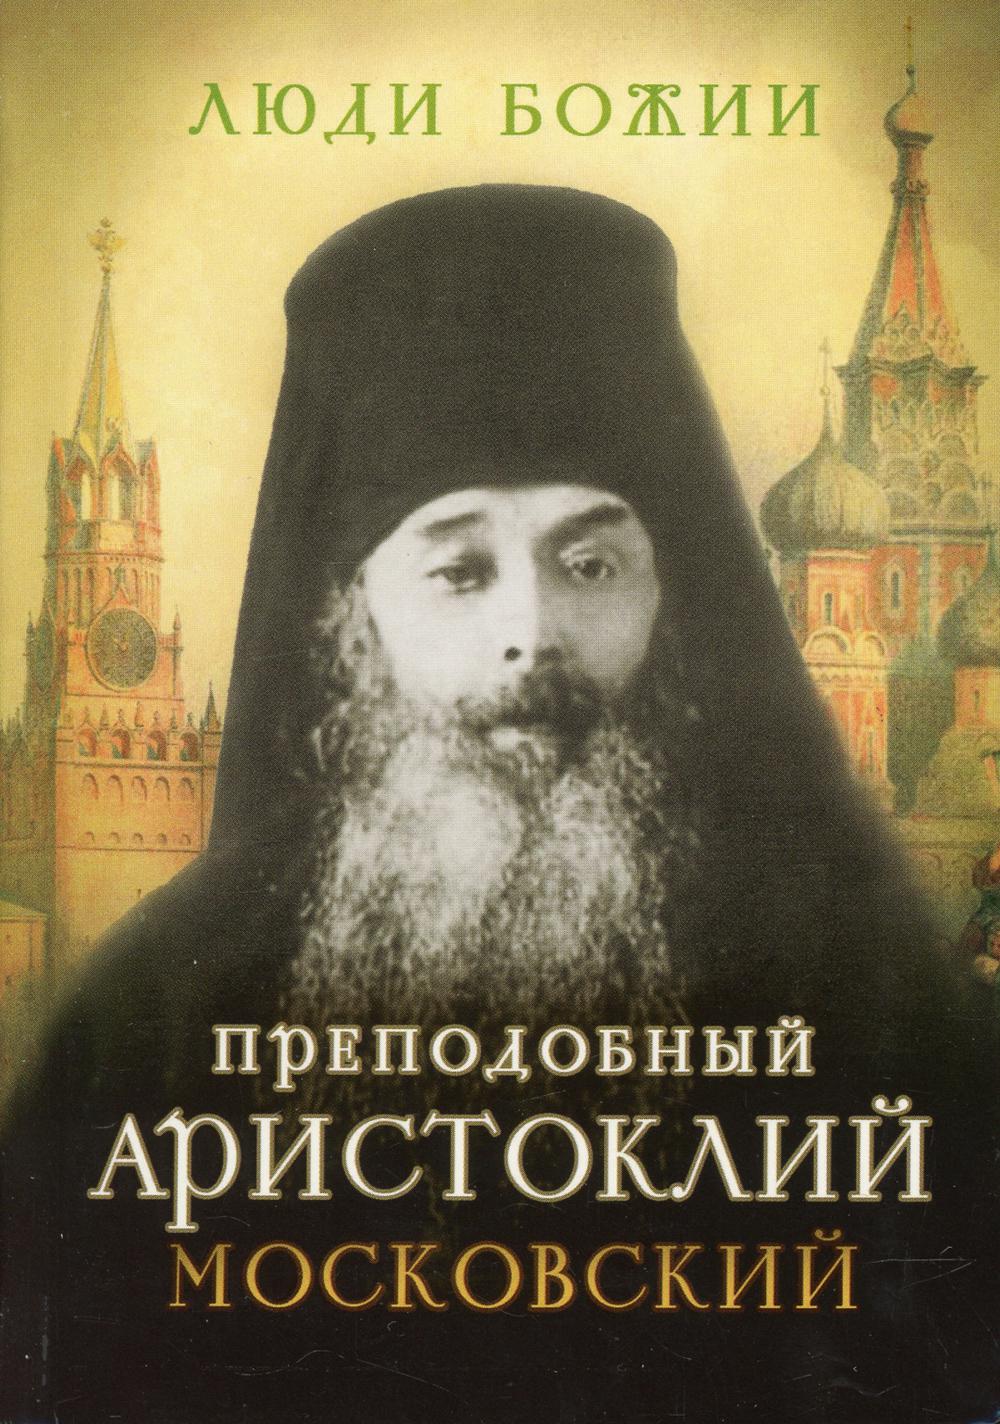 фото Книга преподобный аристоклий московский сретенский монастырь